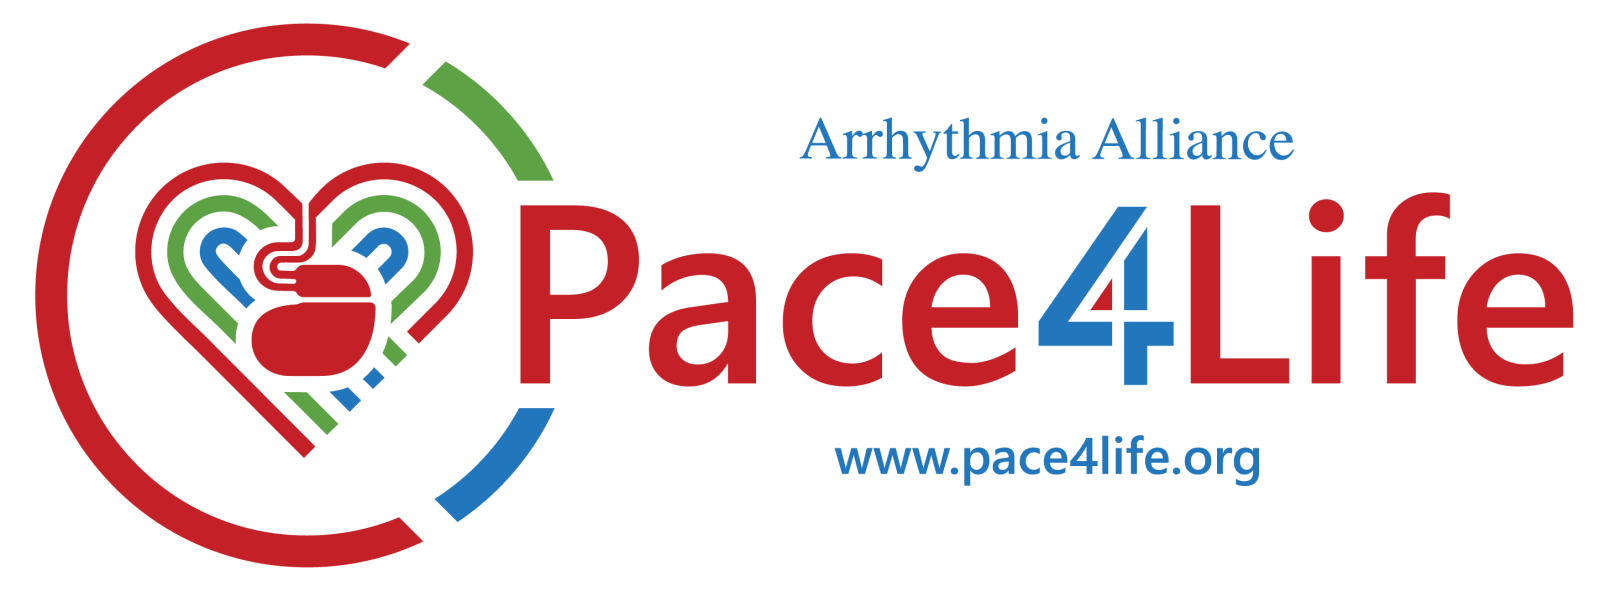 Arrhythmia Alliance Pace4Life